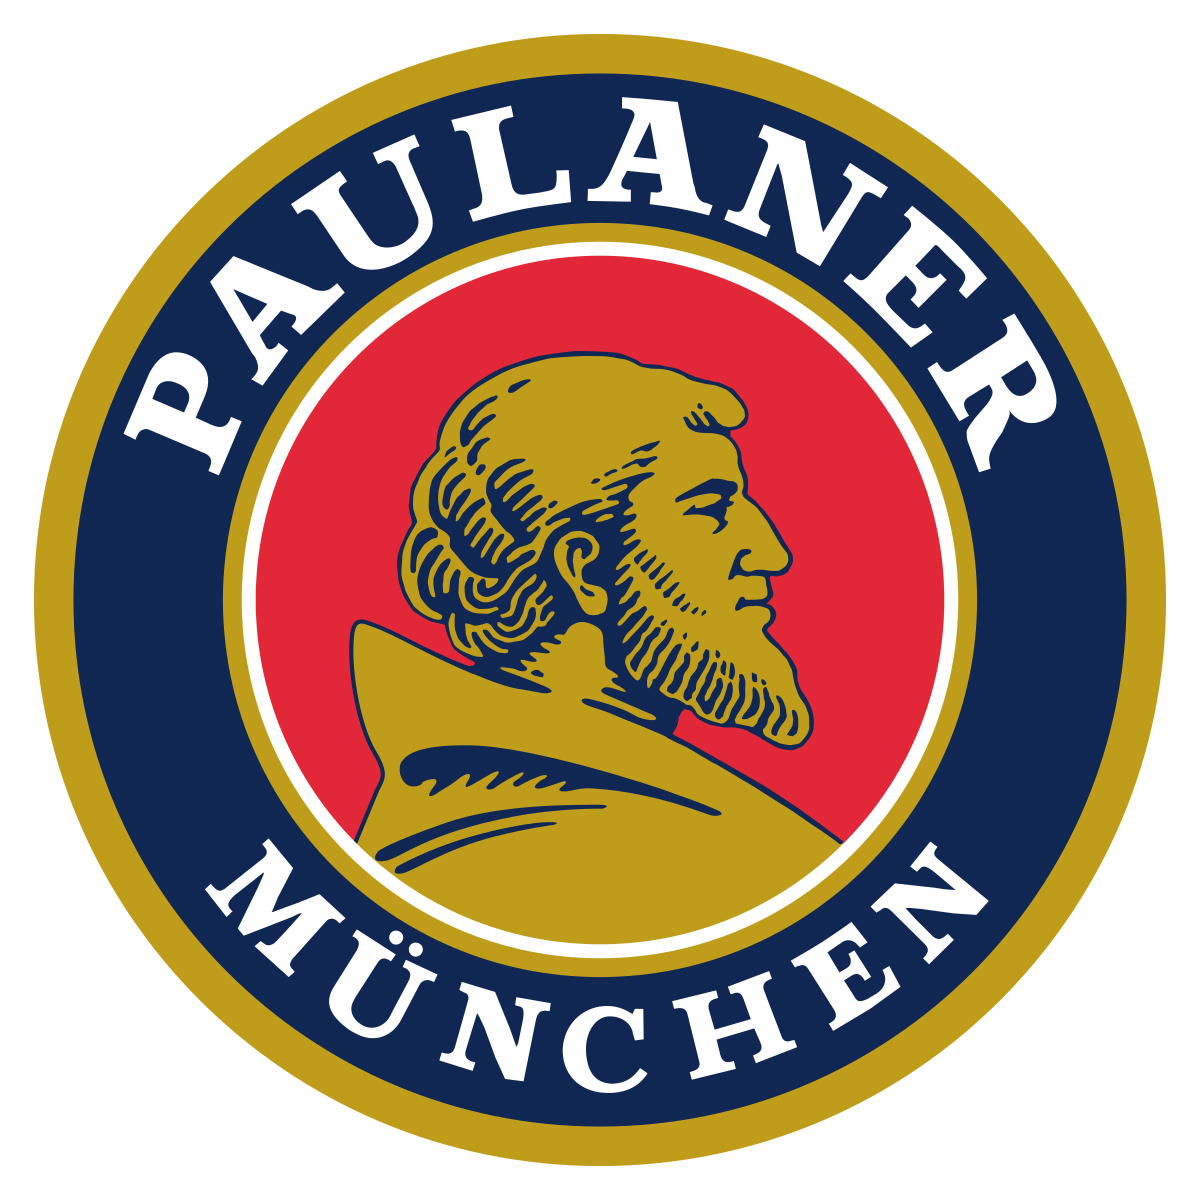 Paulaner.png